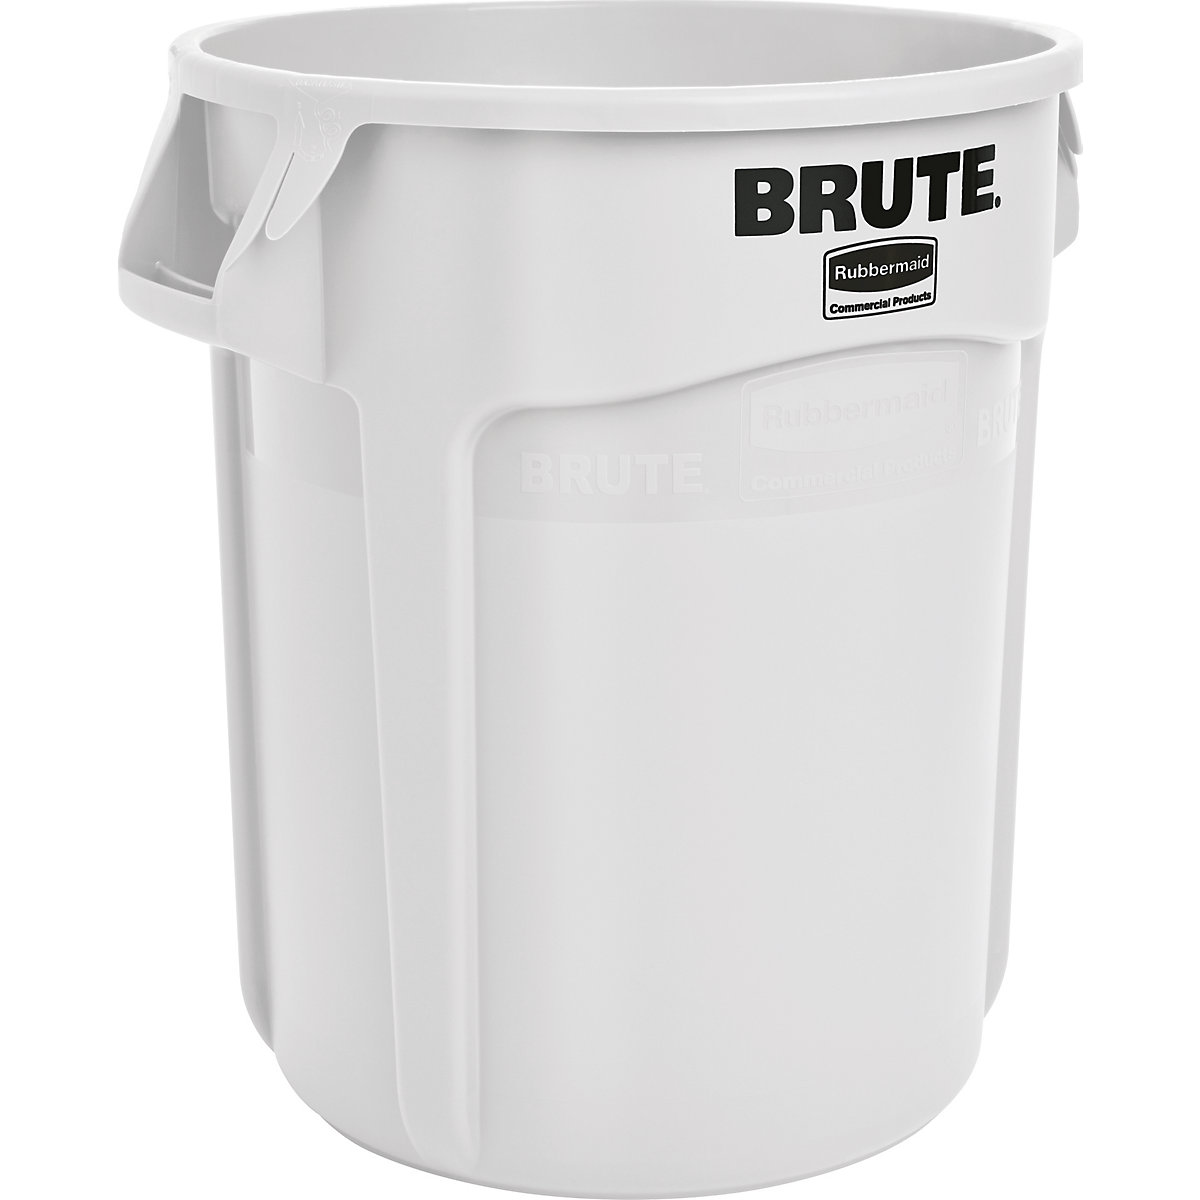 Univerzalni kontejner BRUTE®, okrugli – Rubbermaid